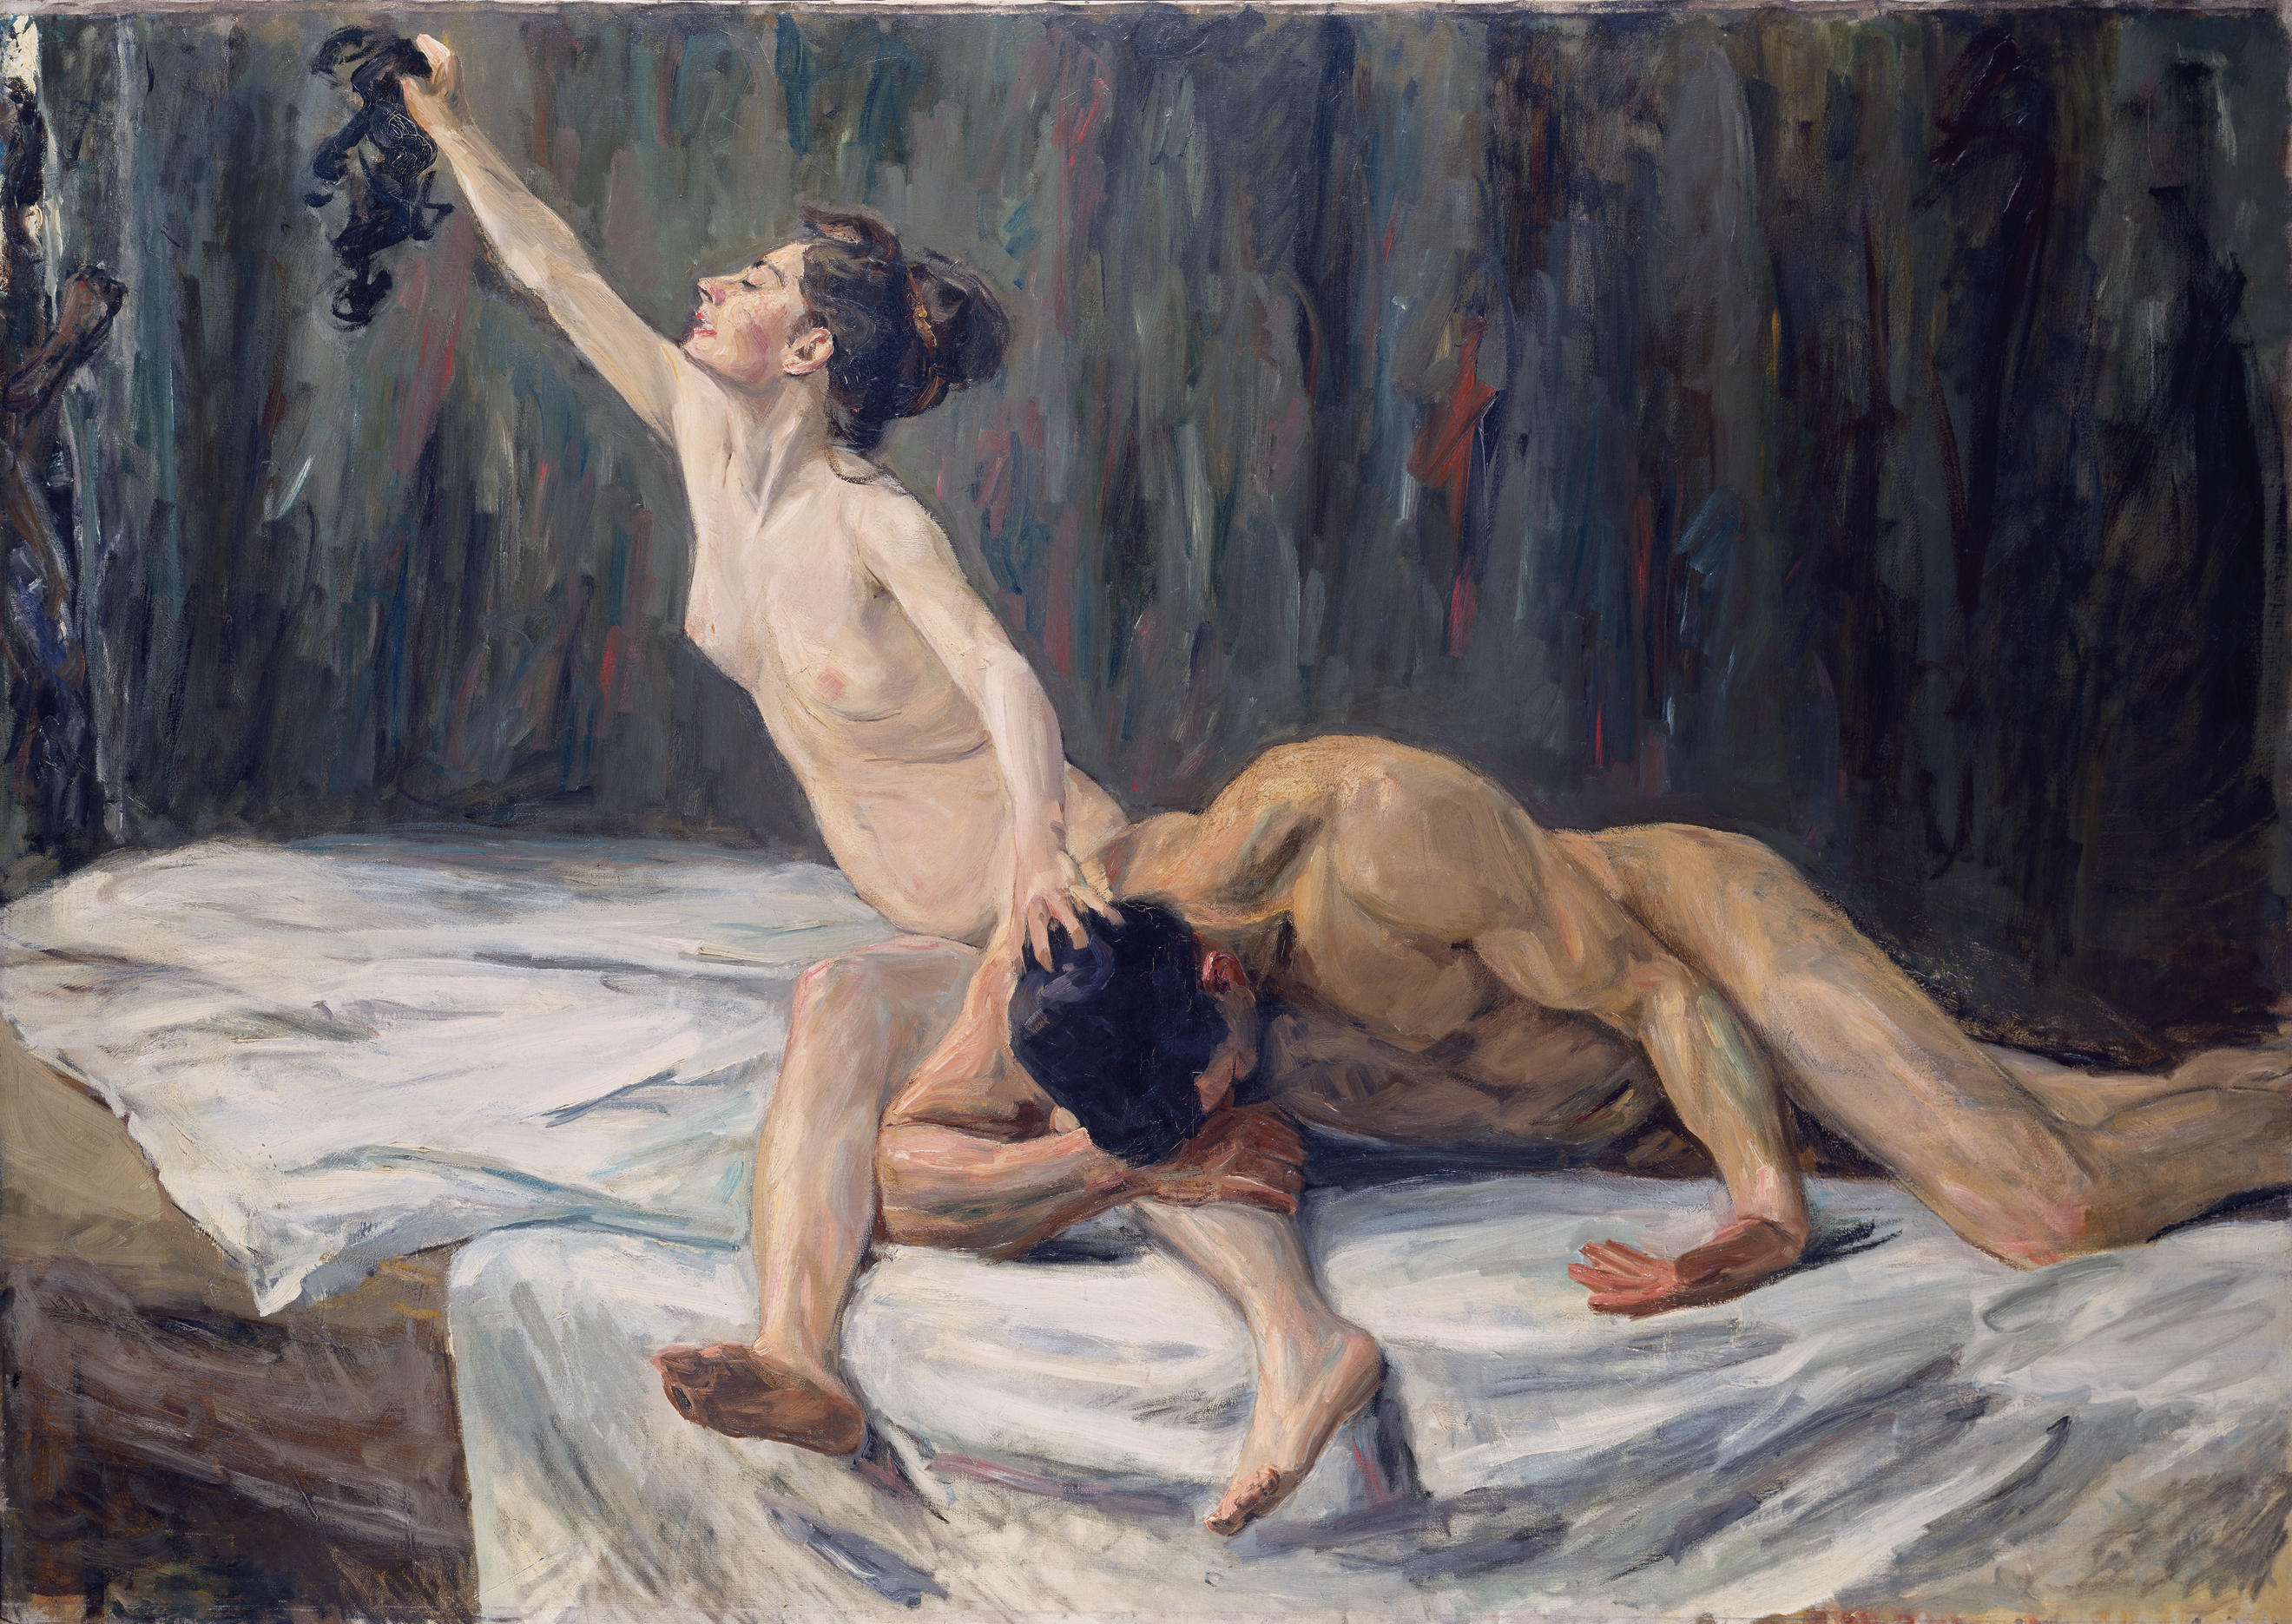 萨姆森和德莱拉 by 马克斯 利伯曼 - 1902 - 151.2 x 212.0 cm 